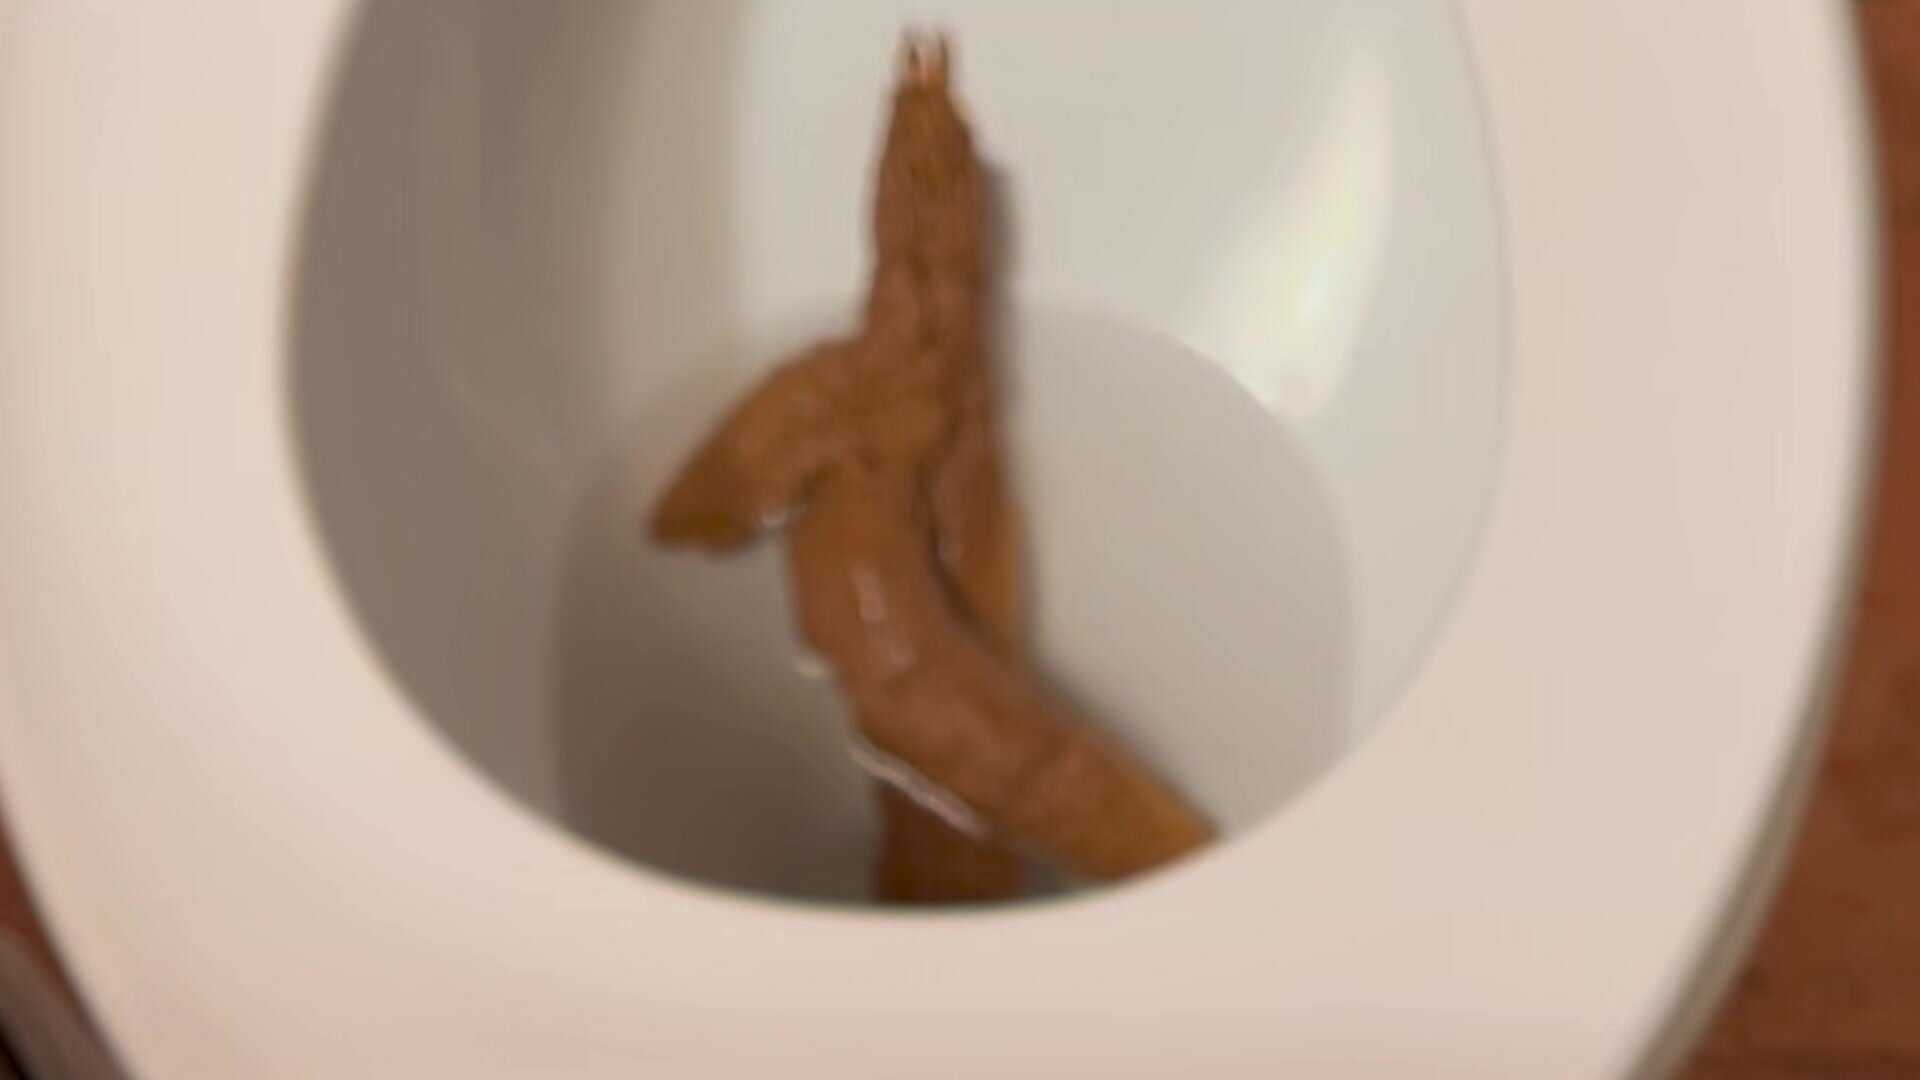 Big heavy poop clogs toilet